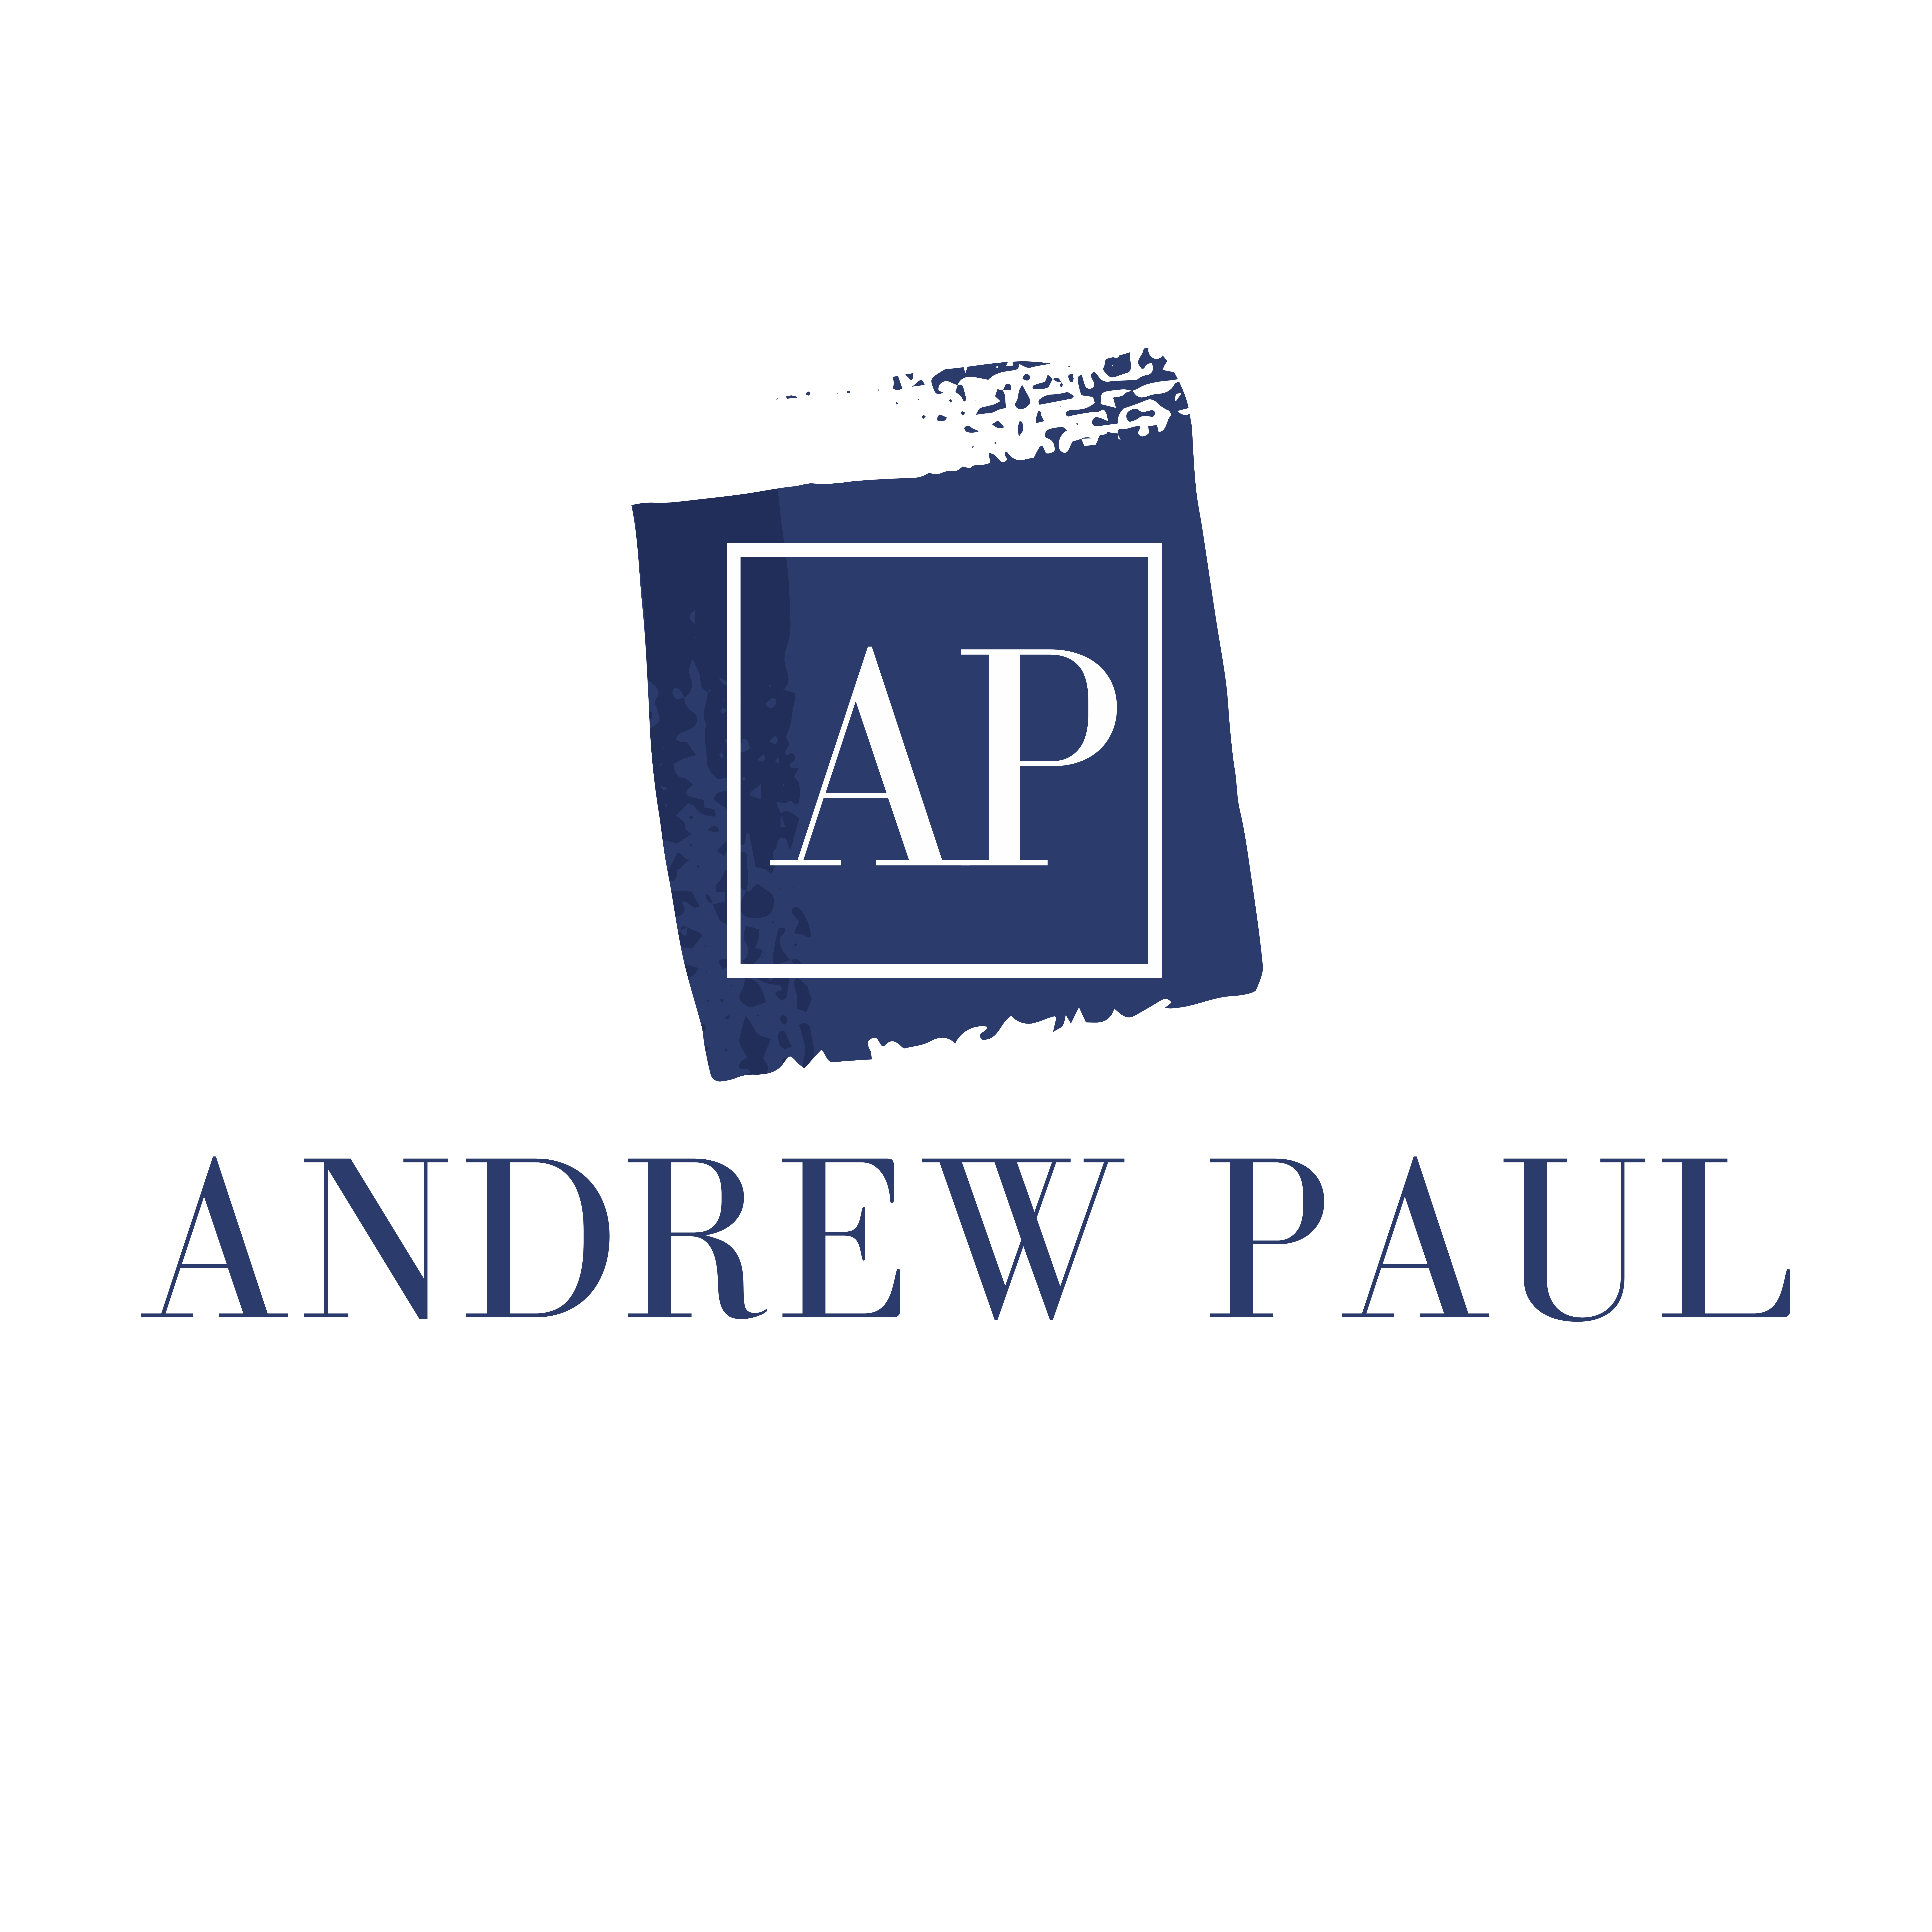 Andrew Paul